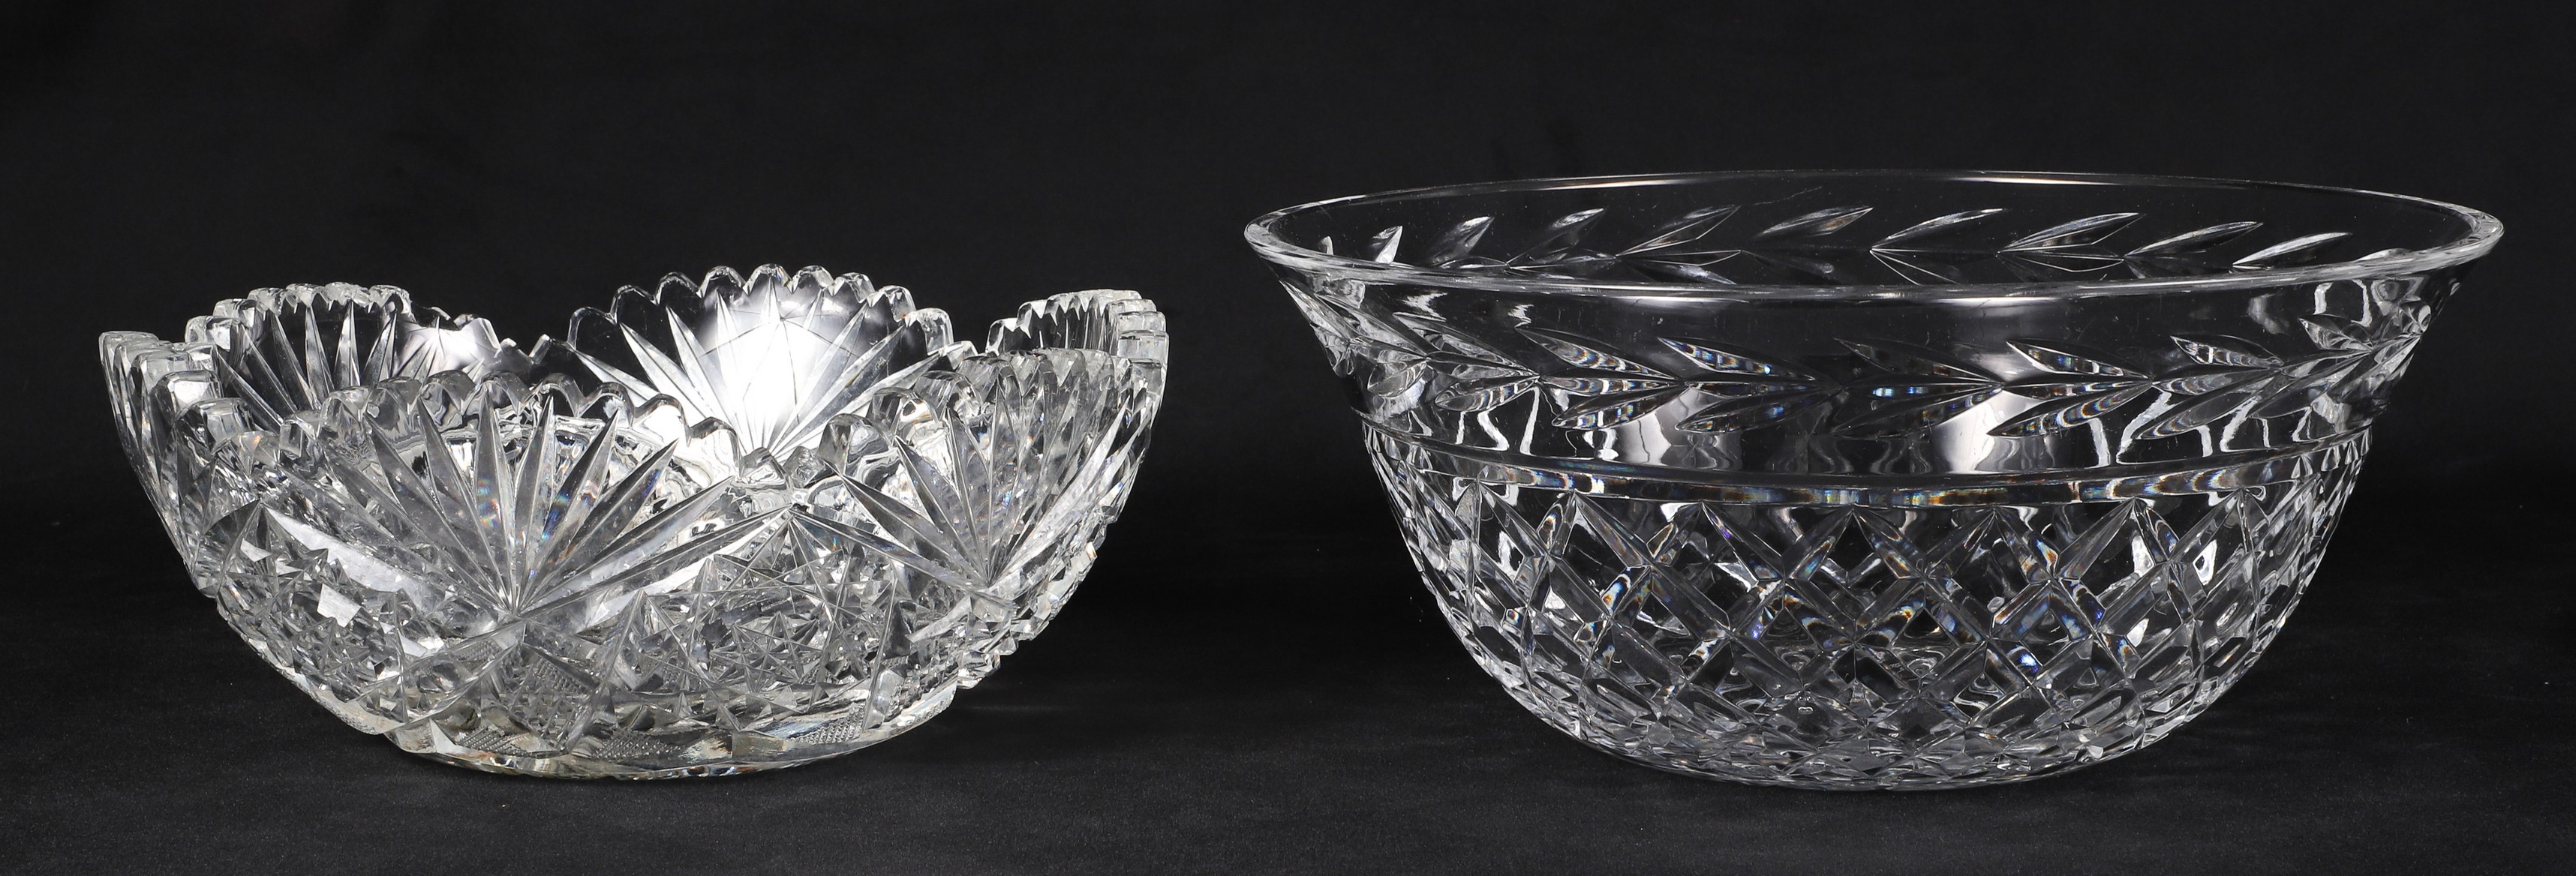 (2) Crystal bowls, c/o Waterford Glandore